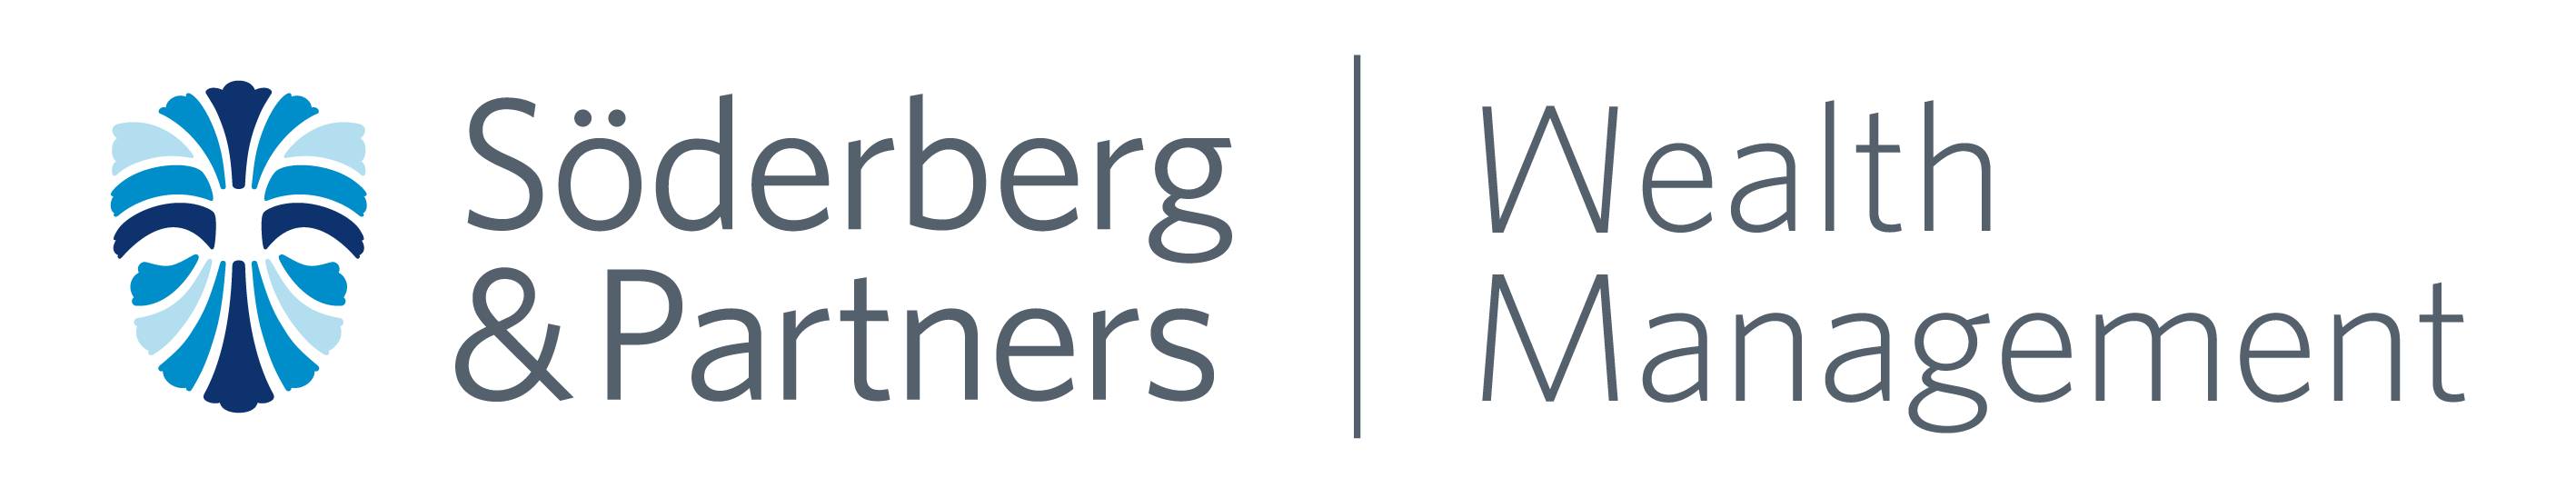 Søderberg & Partners Wealth Management logo